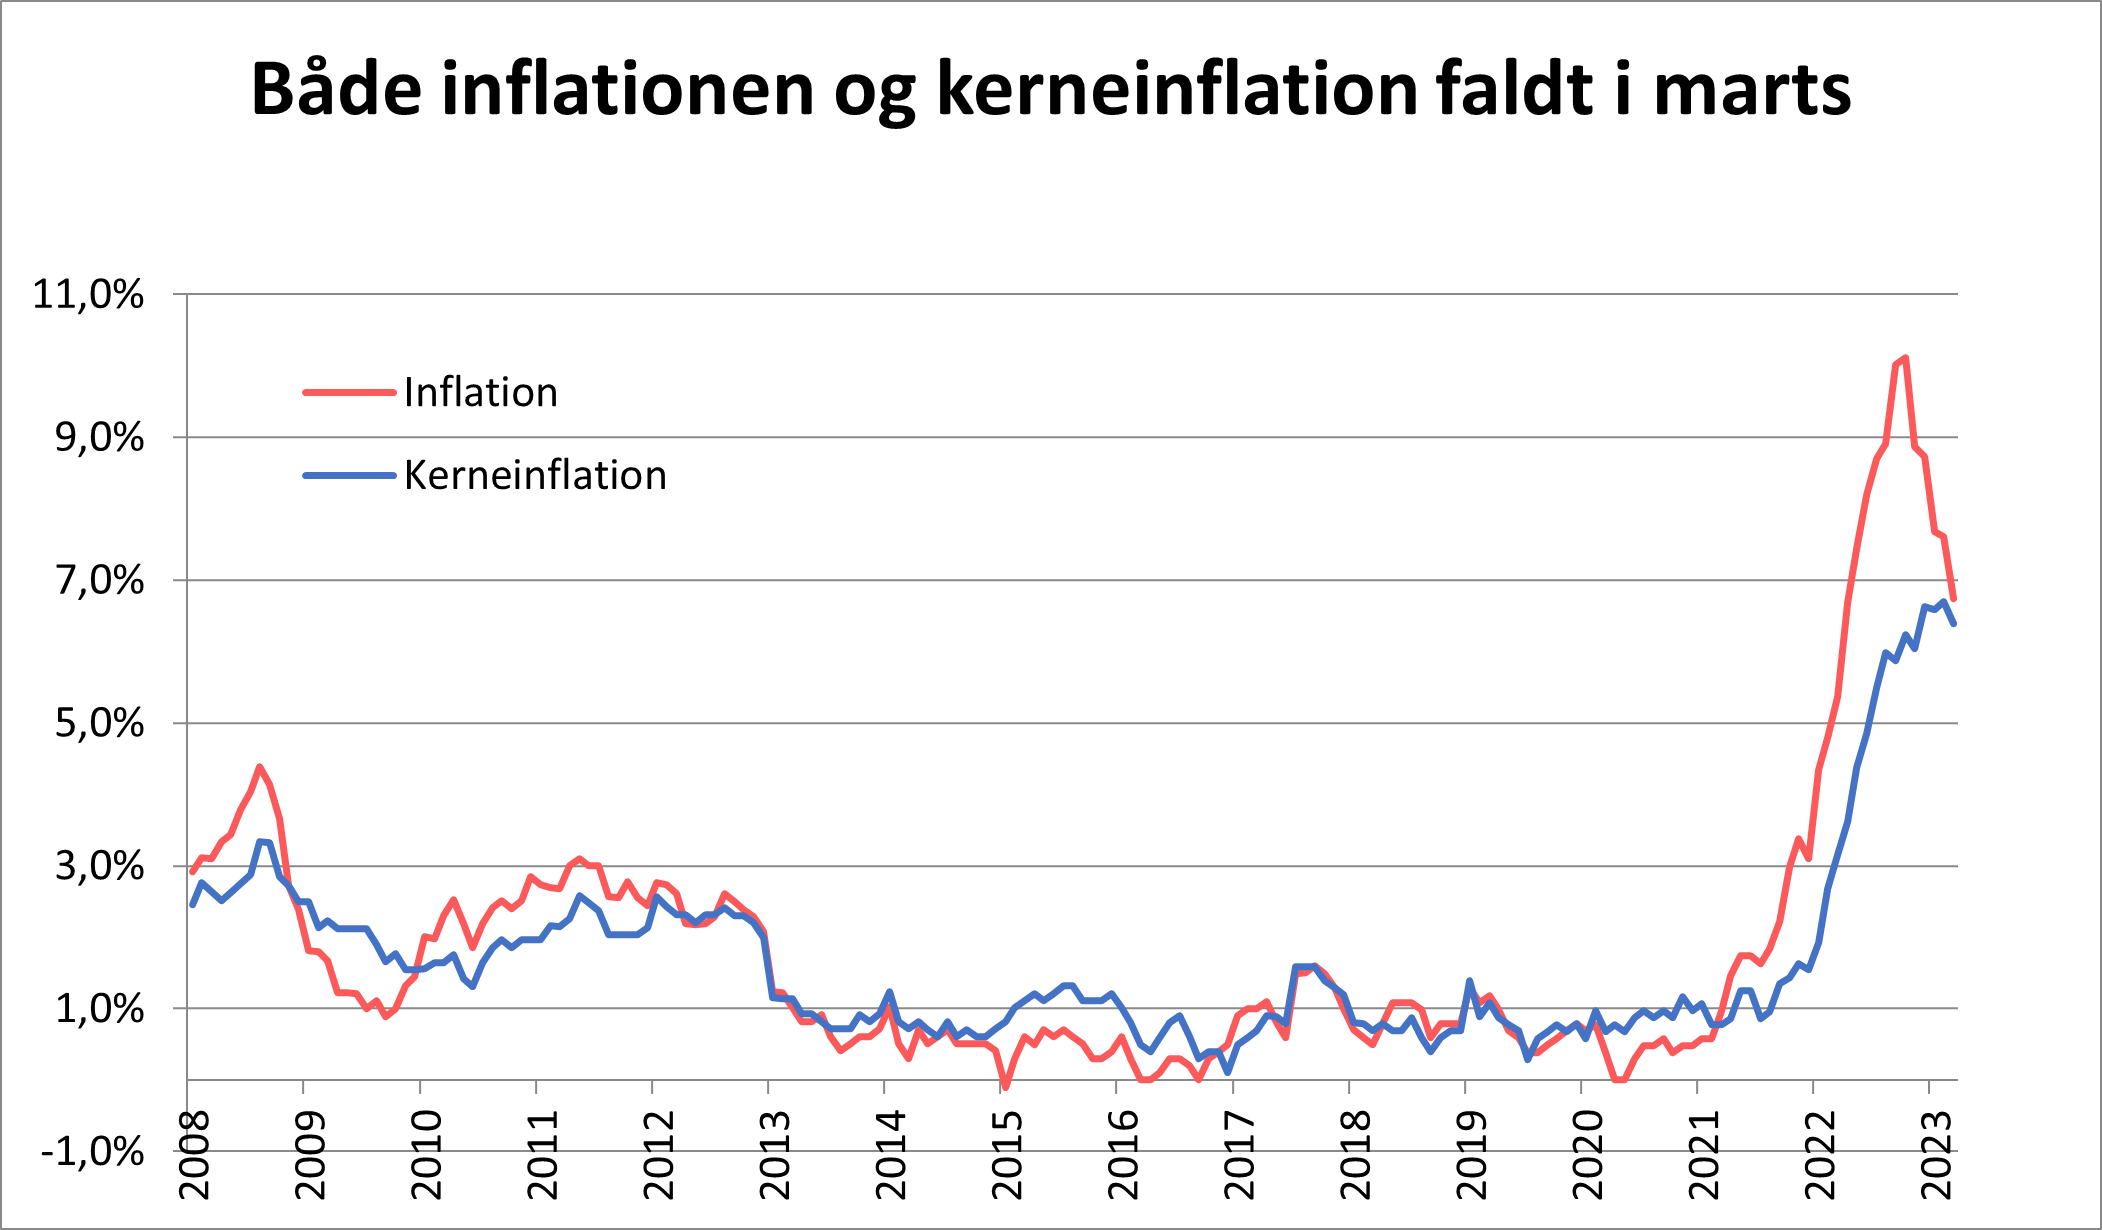 Inflation og kerneinflation faldt i marts